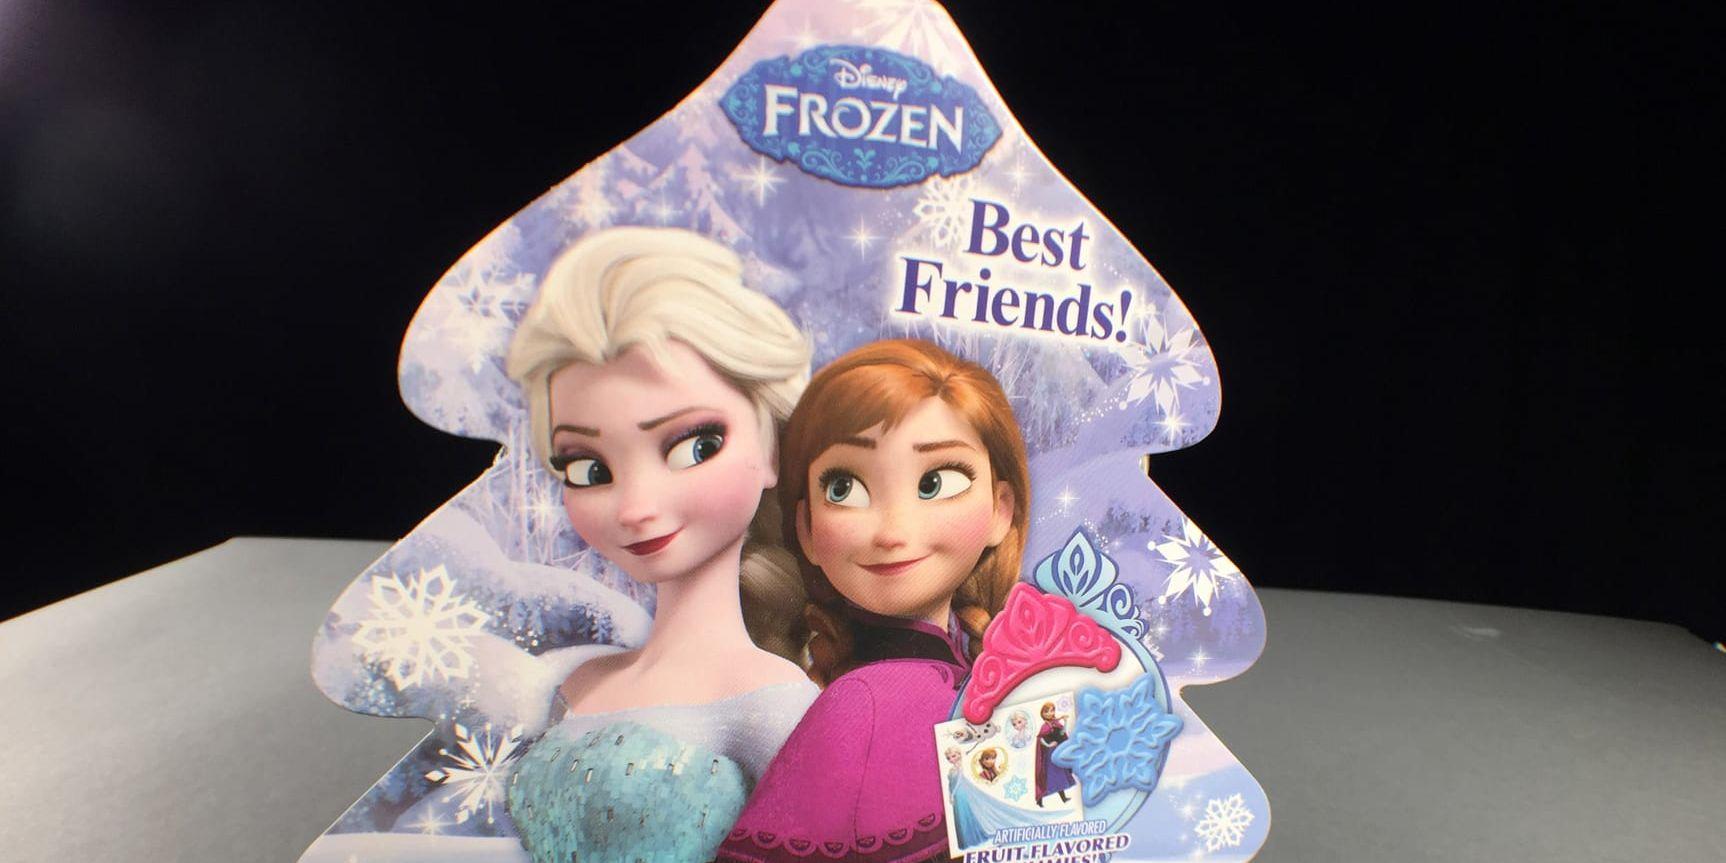 Feministisk propaganda? Systrarna Elsa och Anna från filmen Frost.